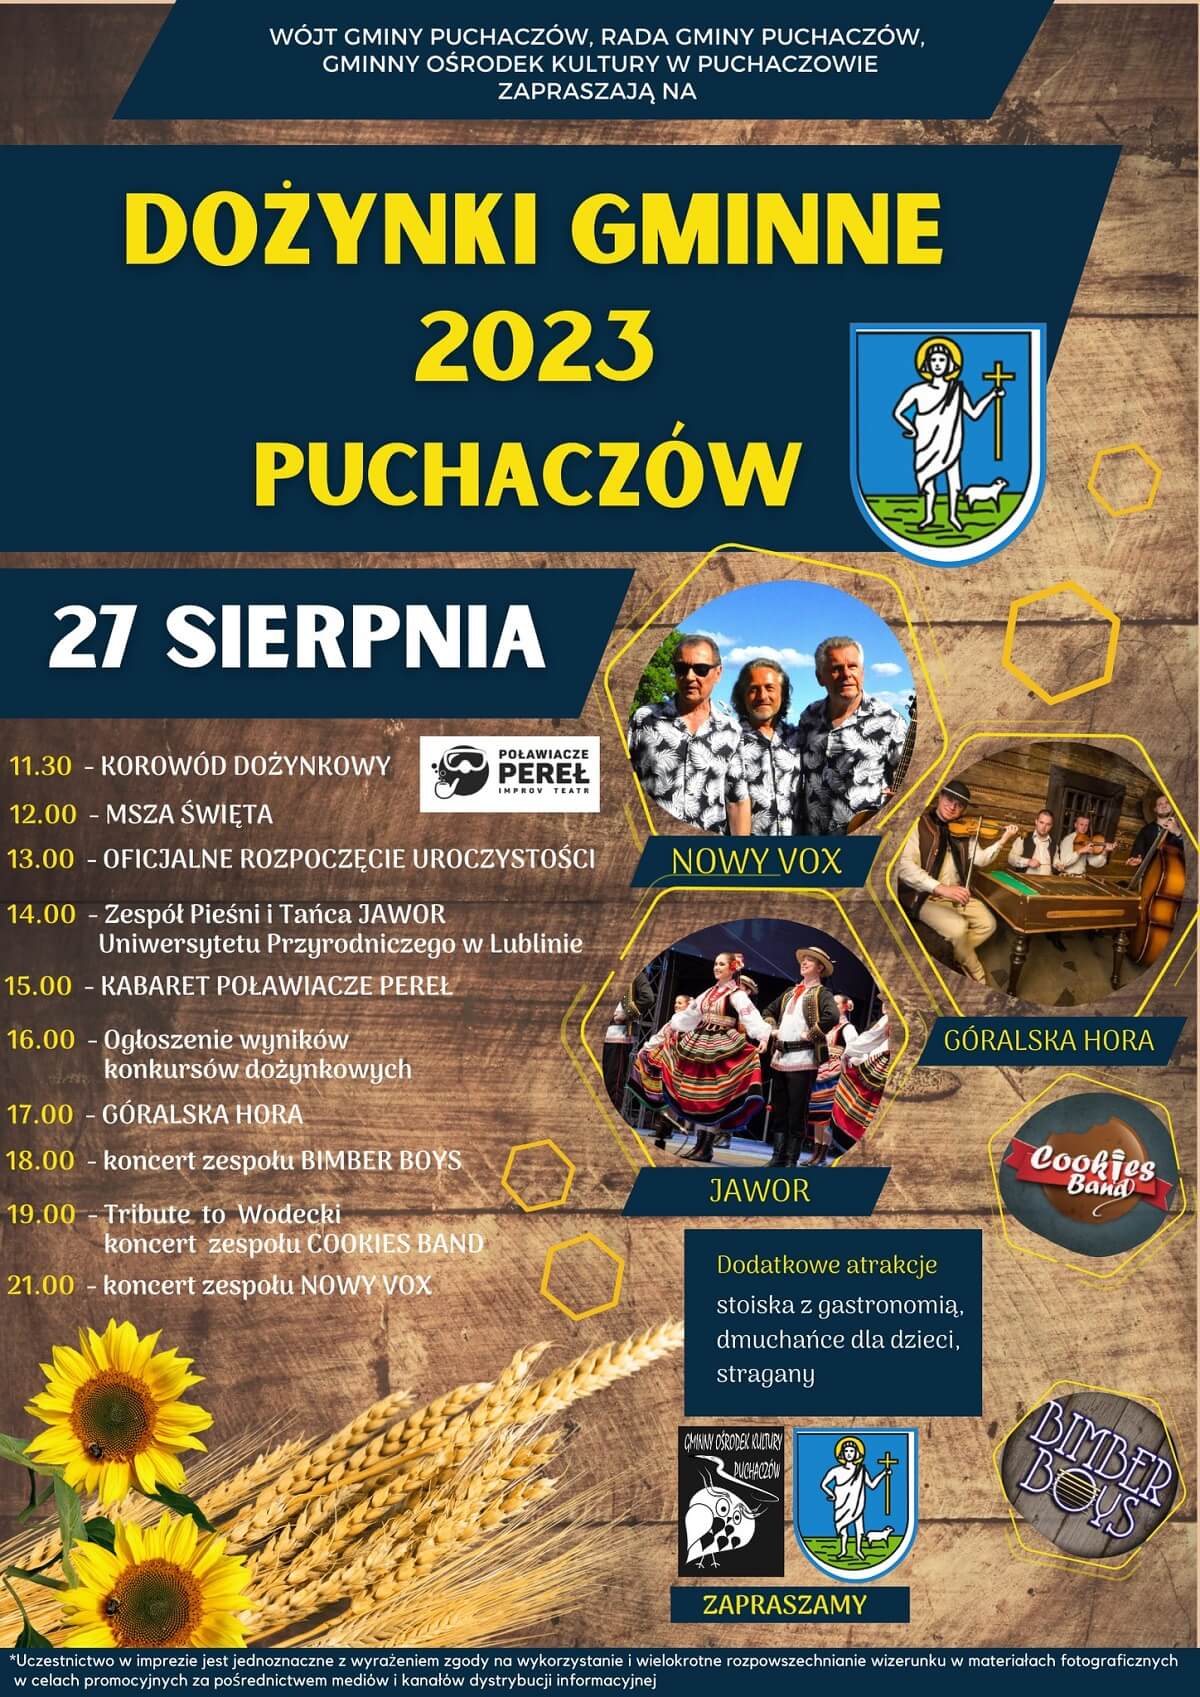 Dożynki w Puchaczowie 2023 - plakat, program wydarzenia